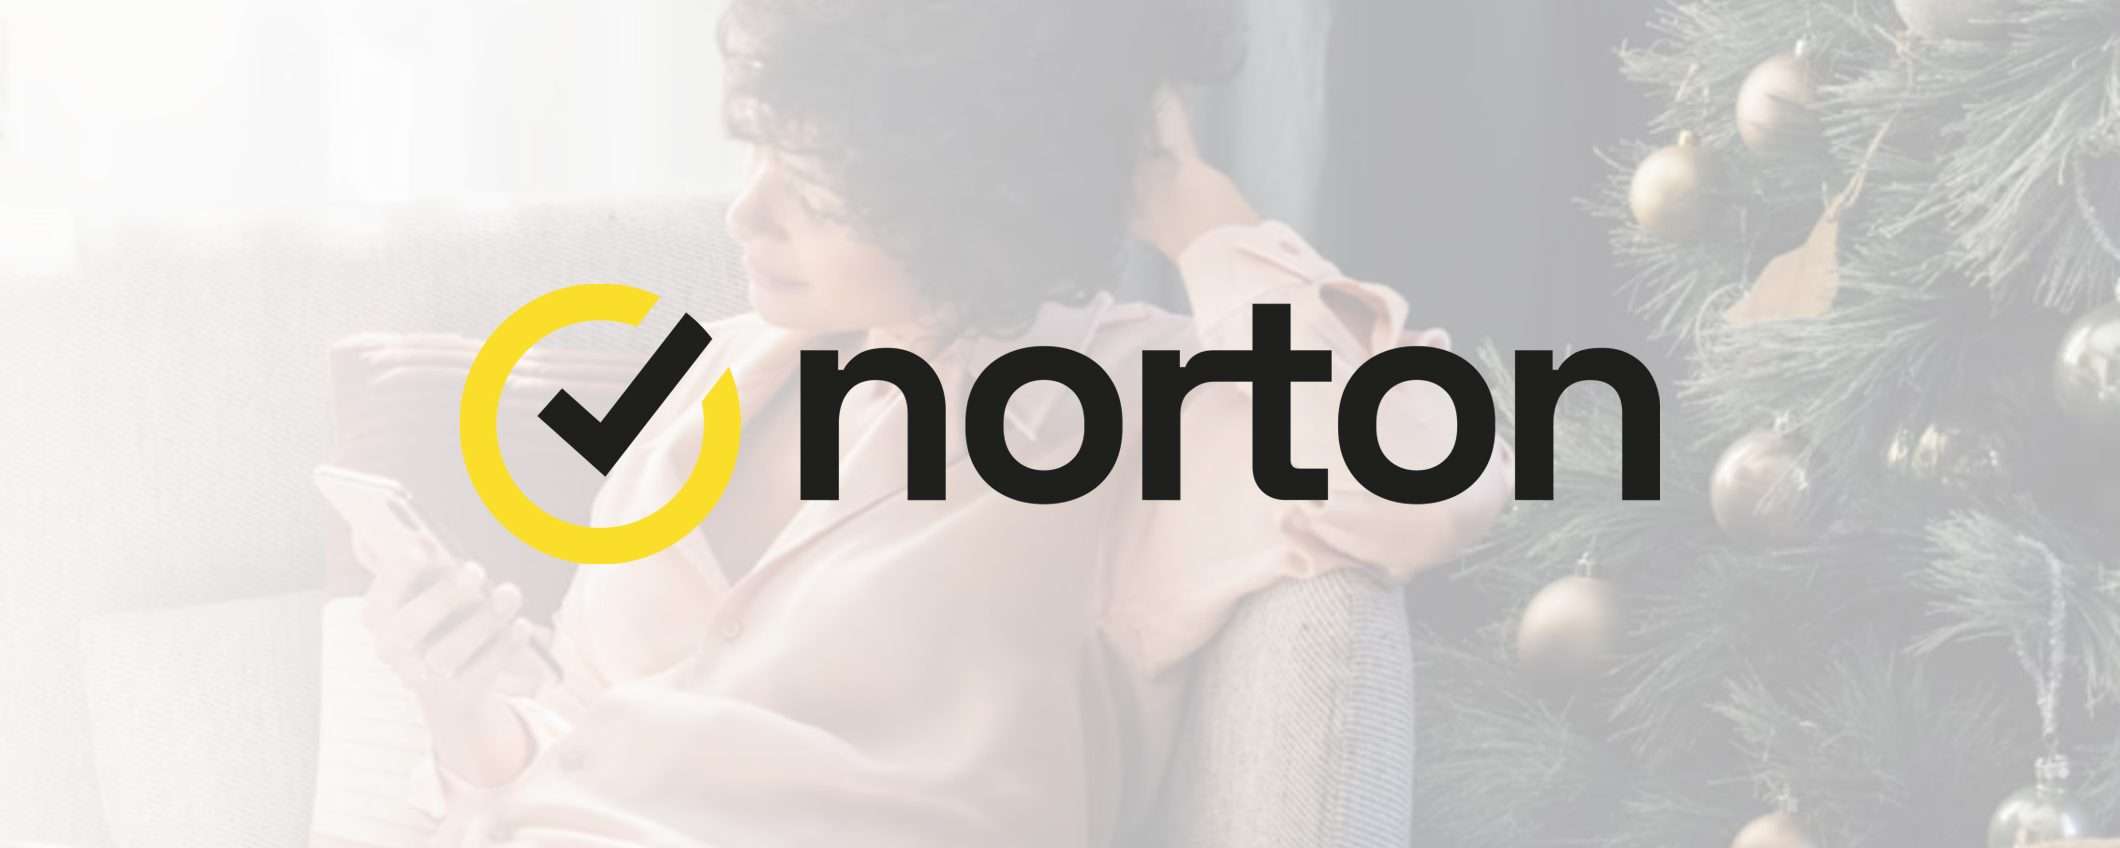 Norton: fino al 71% di sconto sull'antivirus